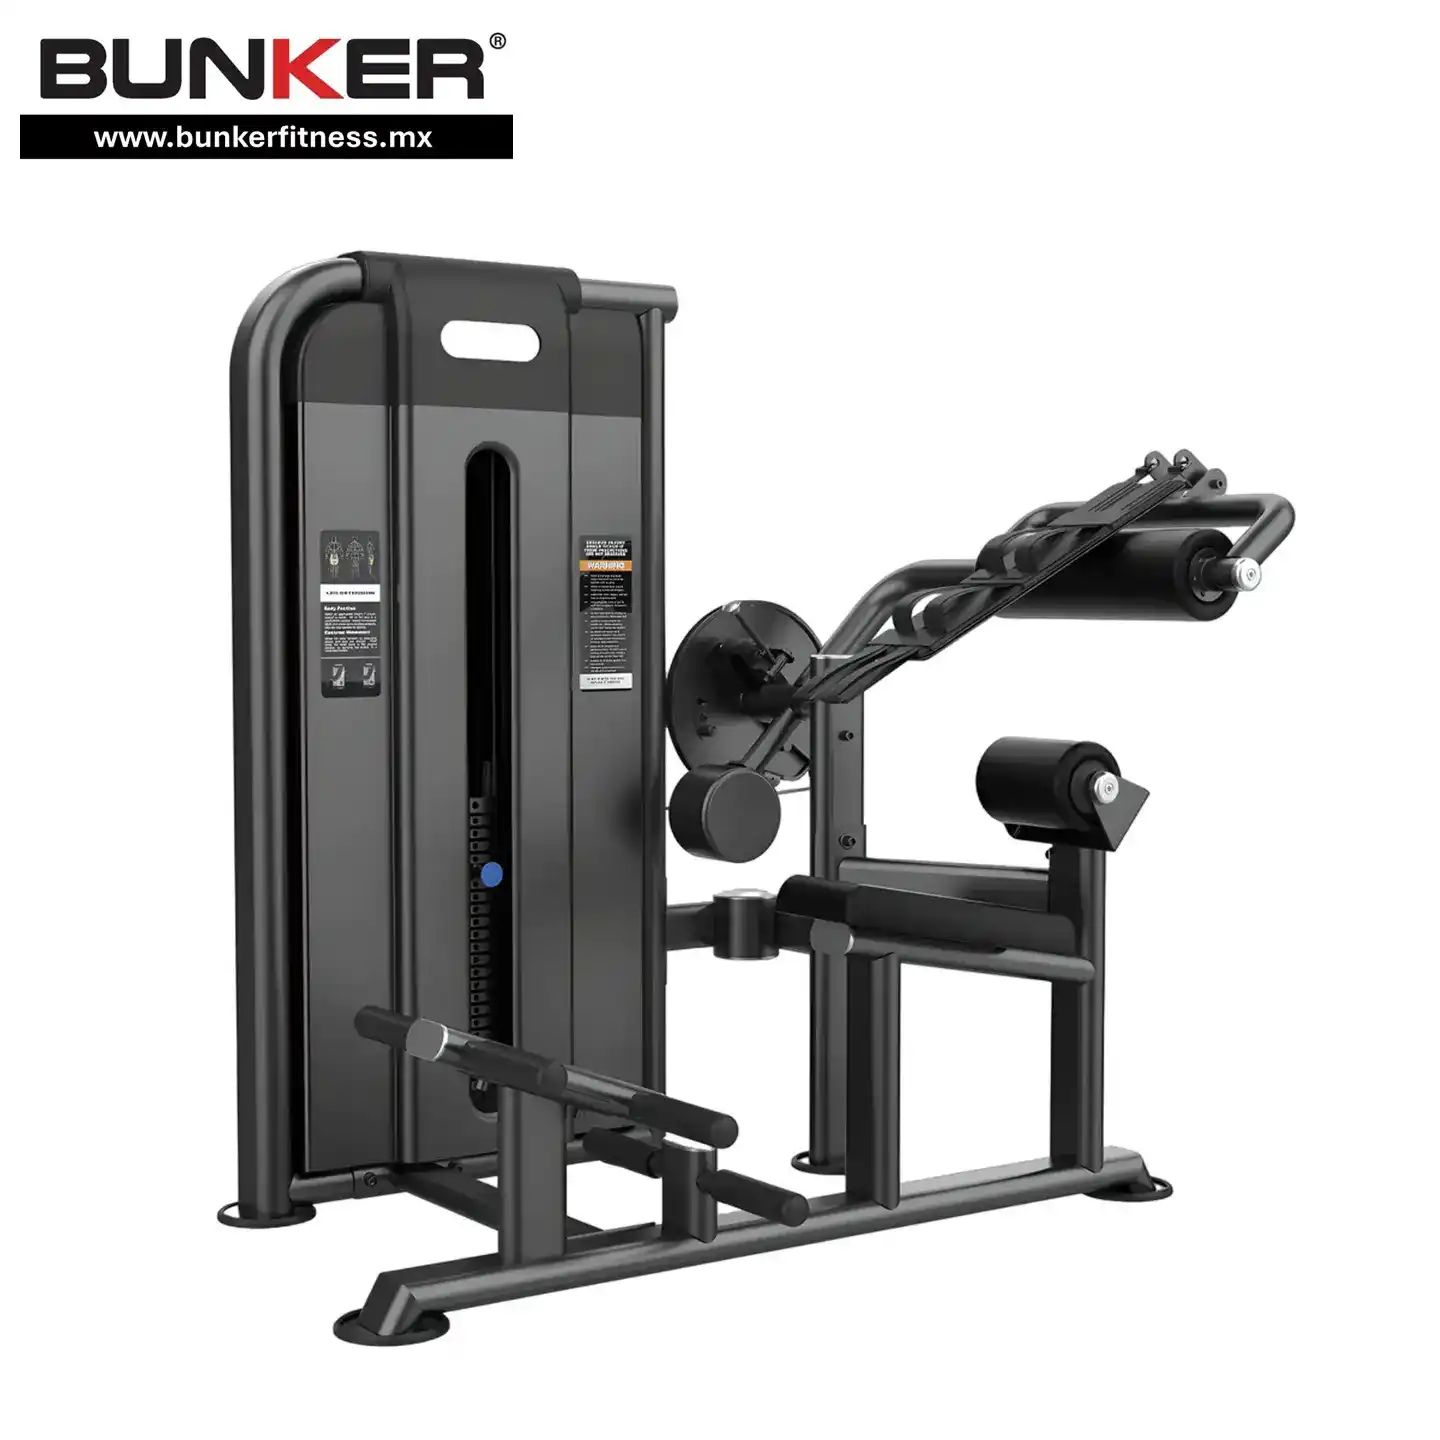 aparato de extension abdominal y espalda con peso integrado bunker gym bunker fitness